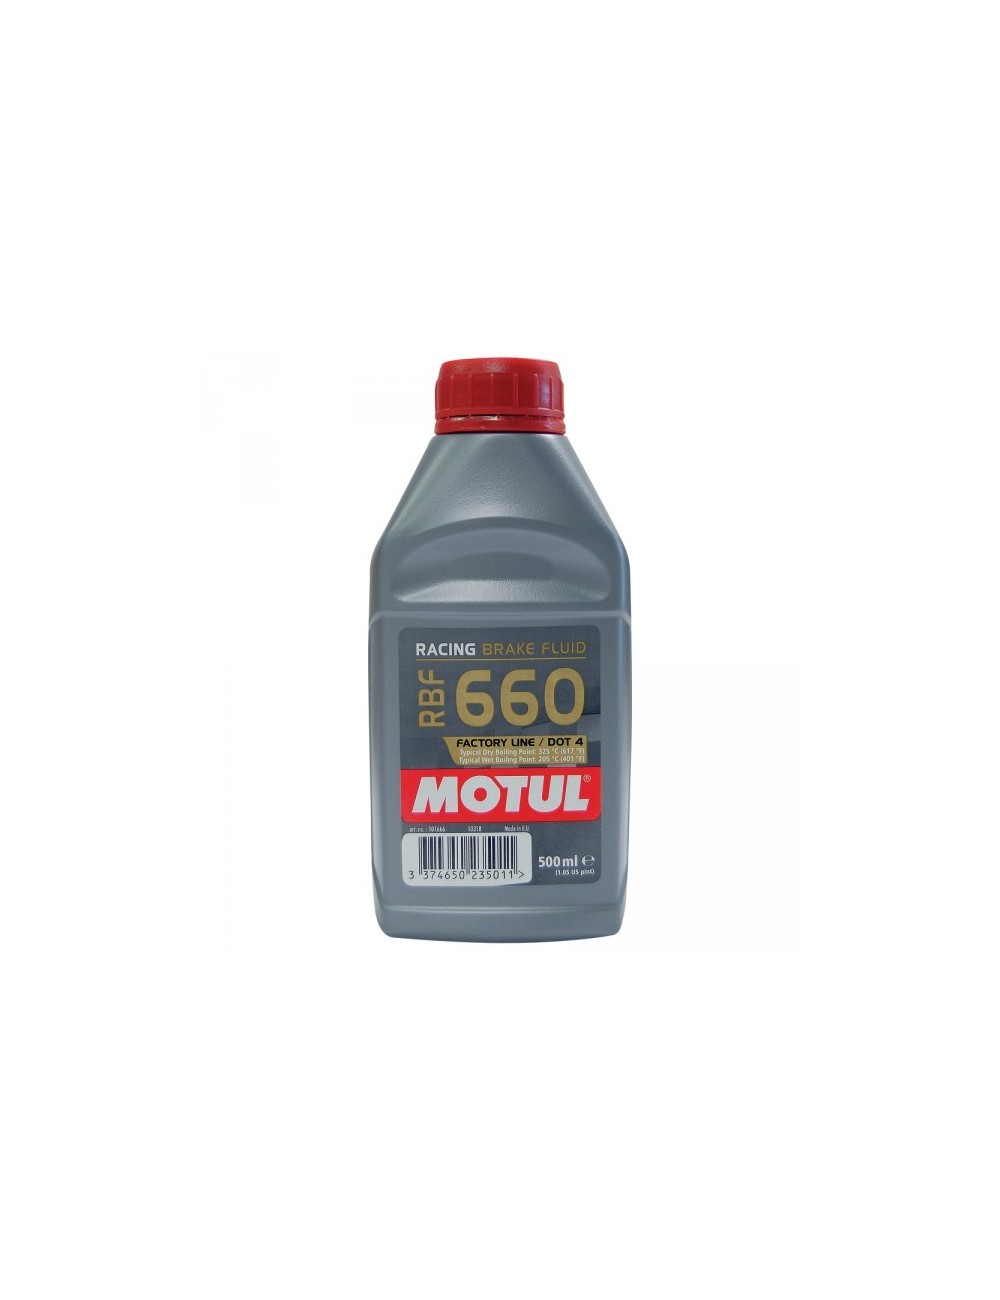 DOT 4 Bremsflüssigkeit Motul RBF 660 1/2 W 325 ° C